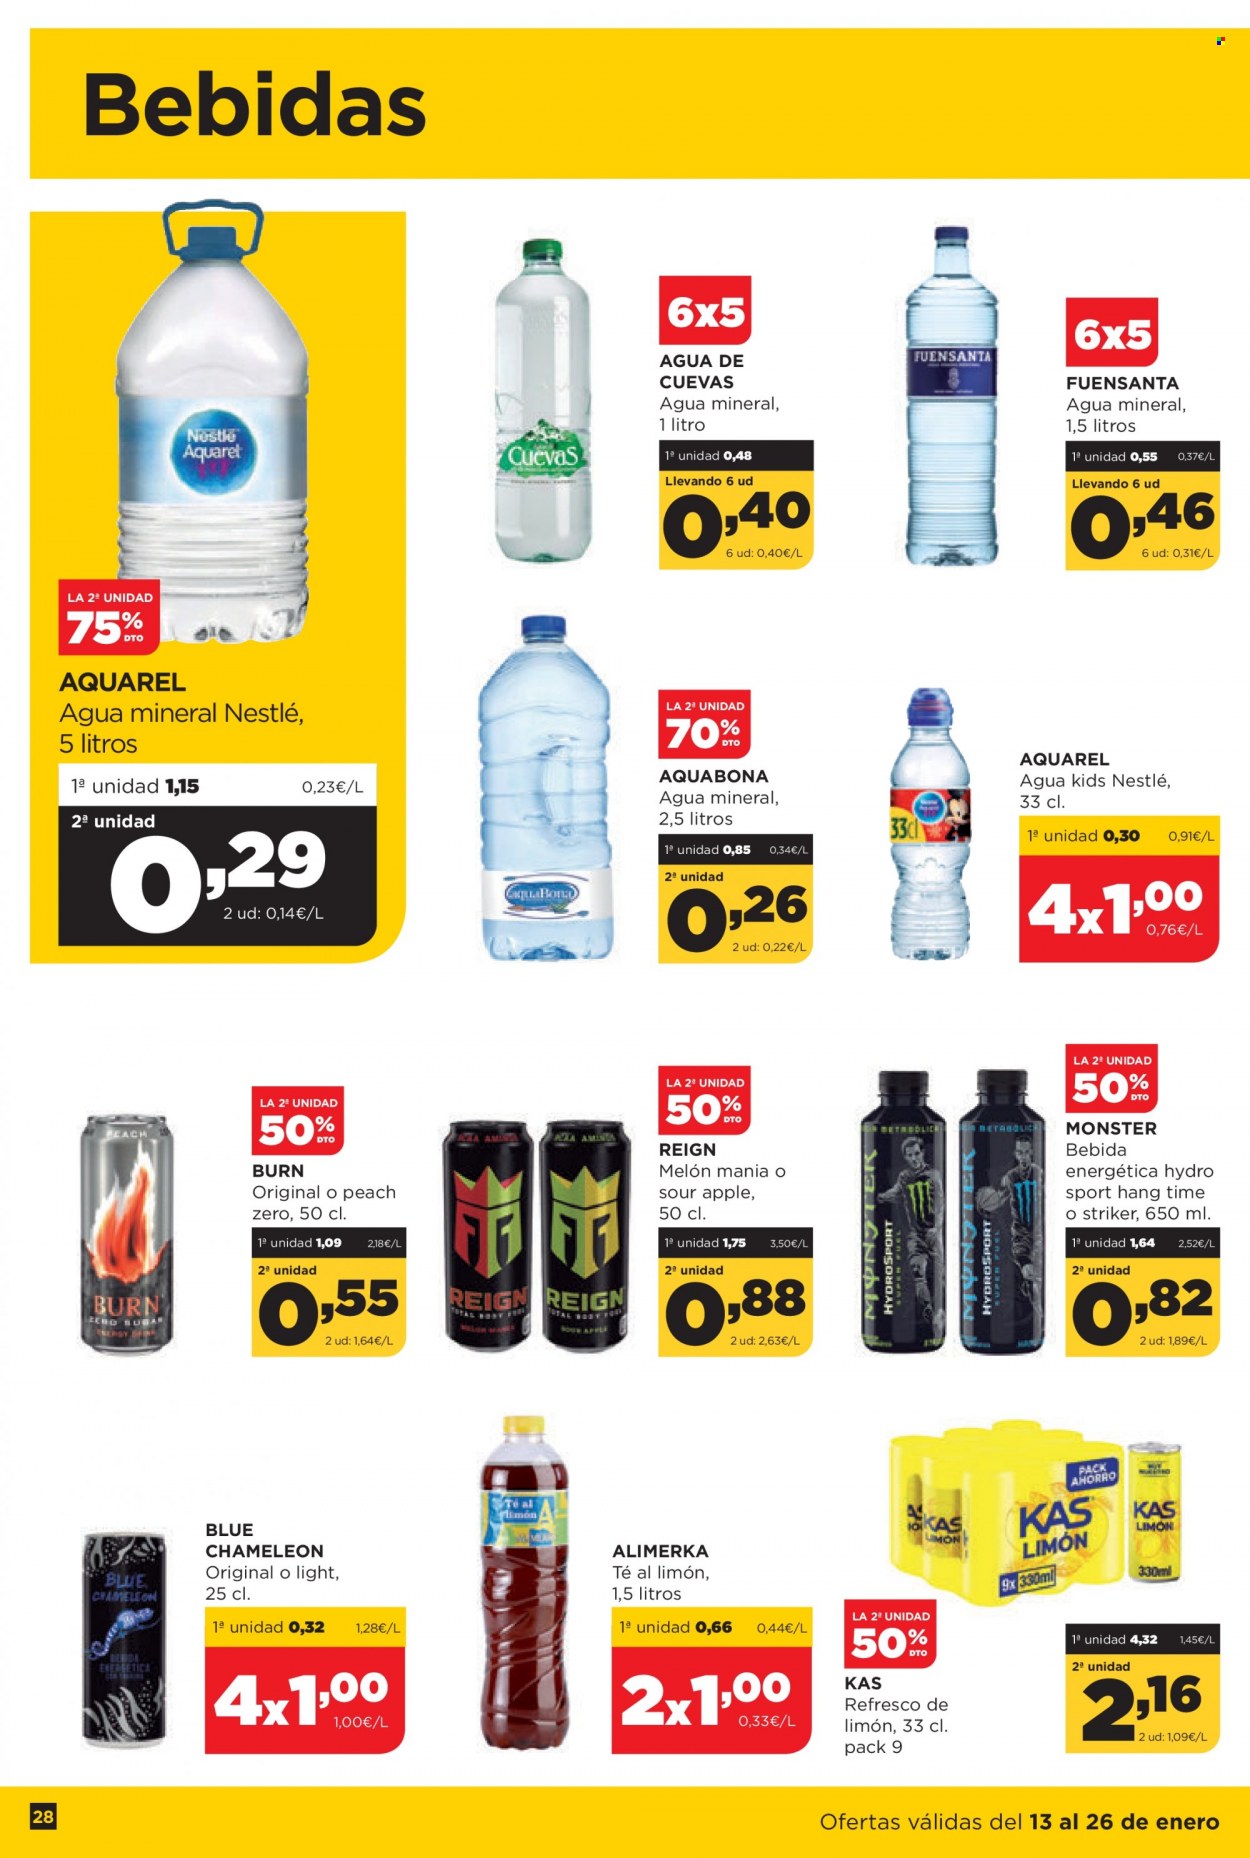 thumbnail - Folleto actual Alimerka - 13/01/22 - 26/01/22 - Ventas - Nestlé, refresco, bebida, bebida energética, agua mineral. Página 28.